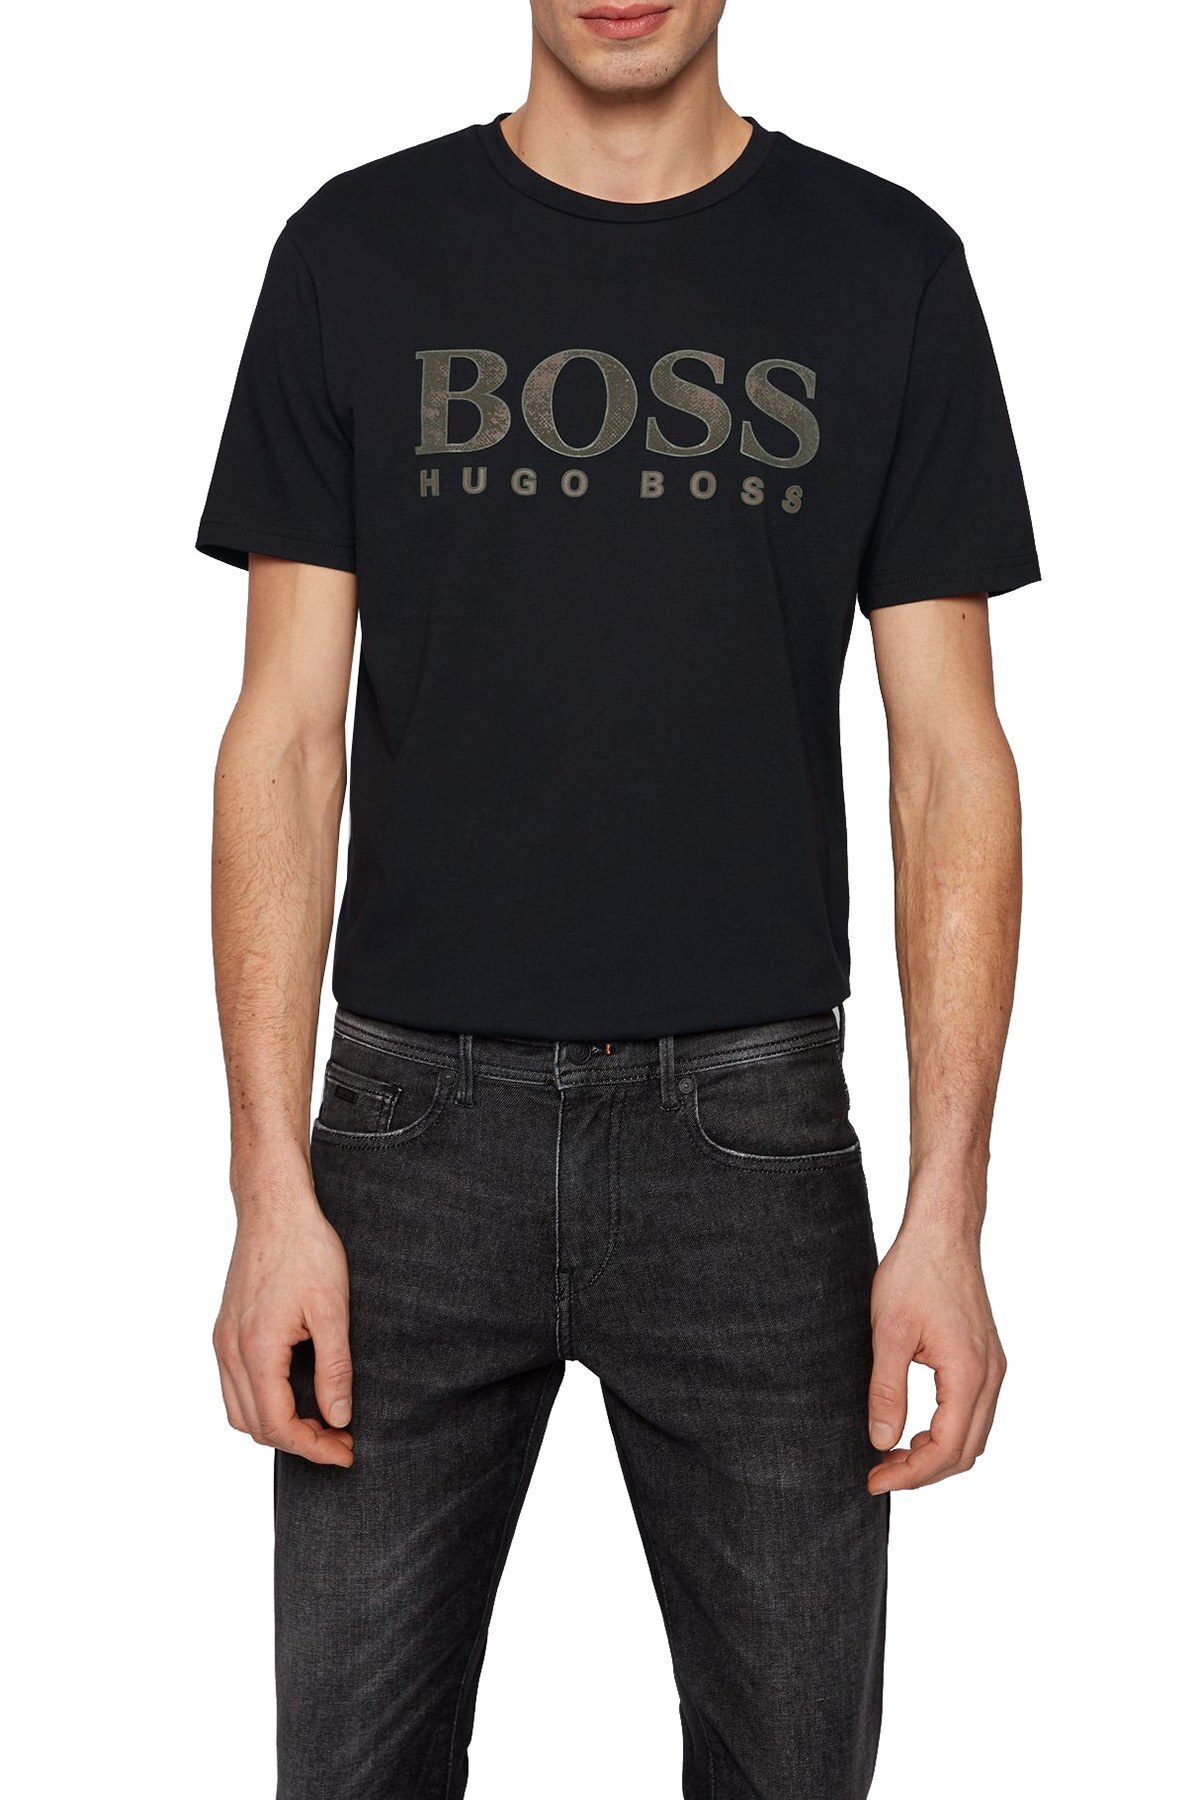 Hugo Boss % 100 Pamuklu Bisiklet Yaka Erkek T Shirt 50450906 001 SİYAH